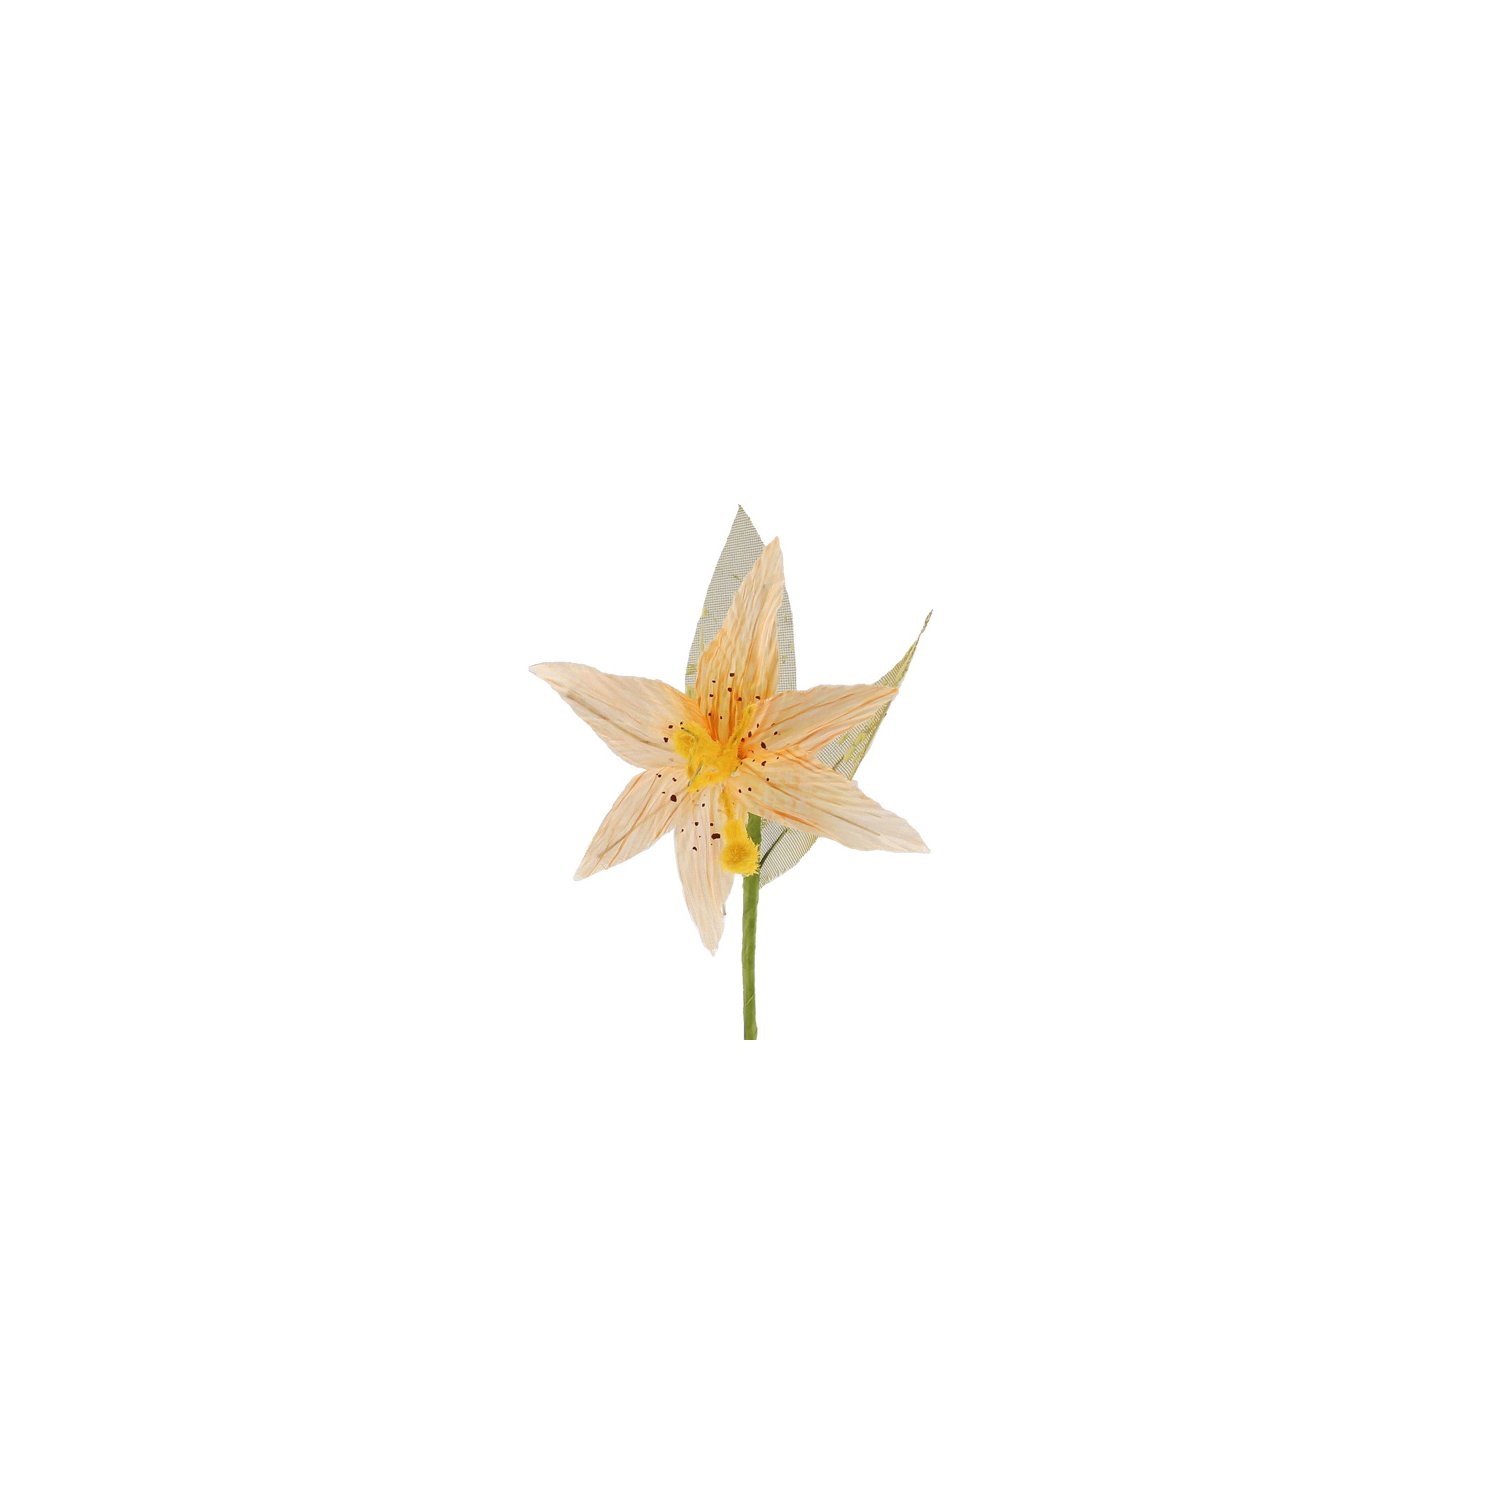 Light orange lily flower decoration 16 x 7cm - 72pcs